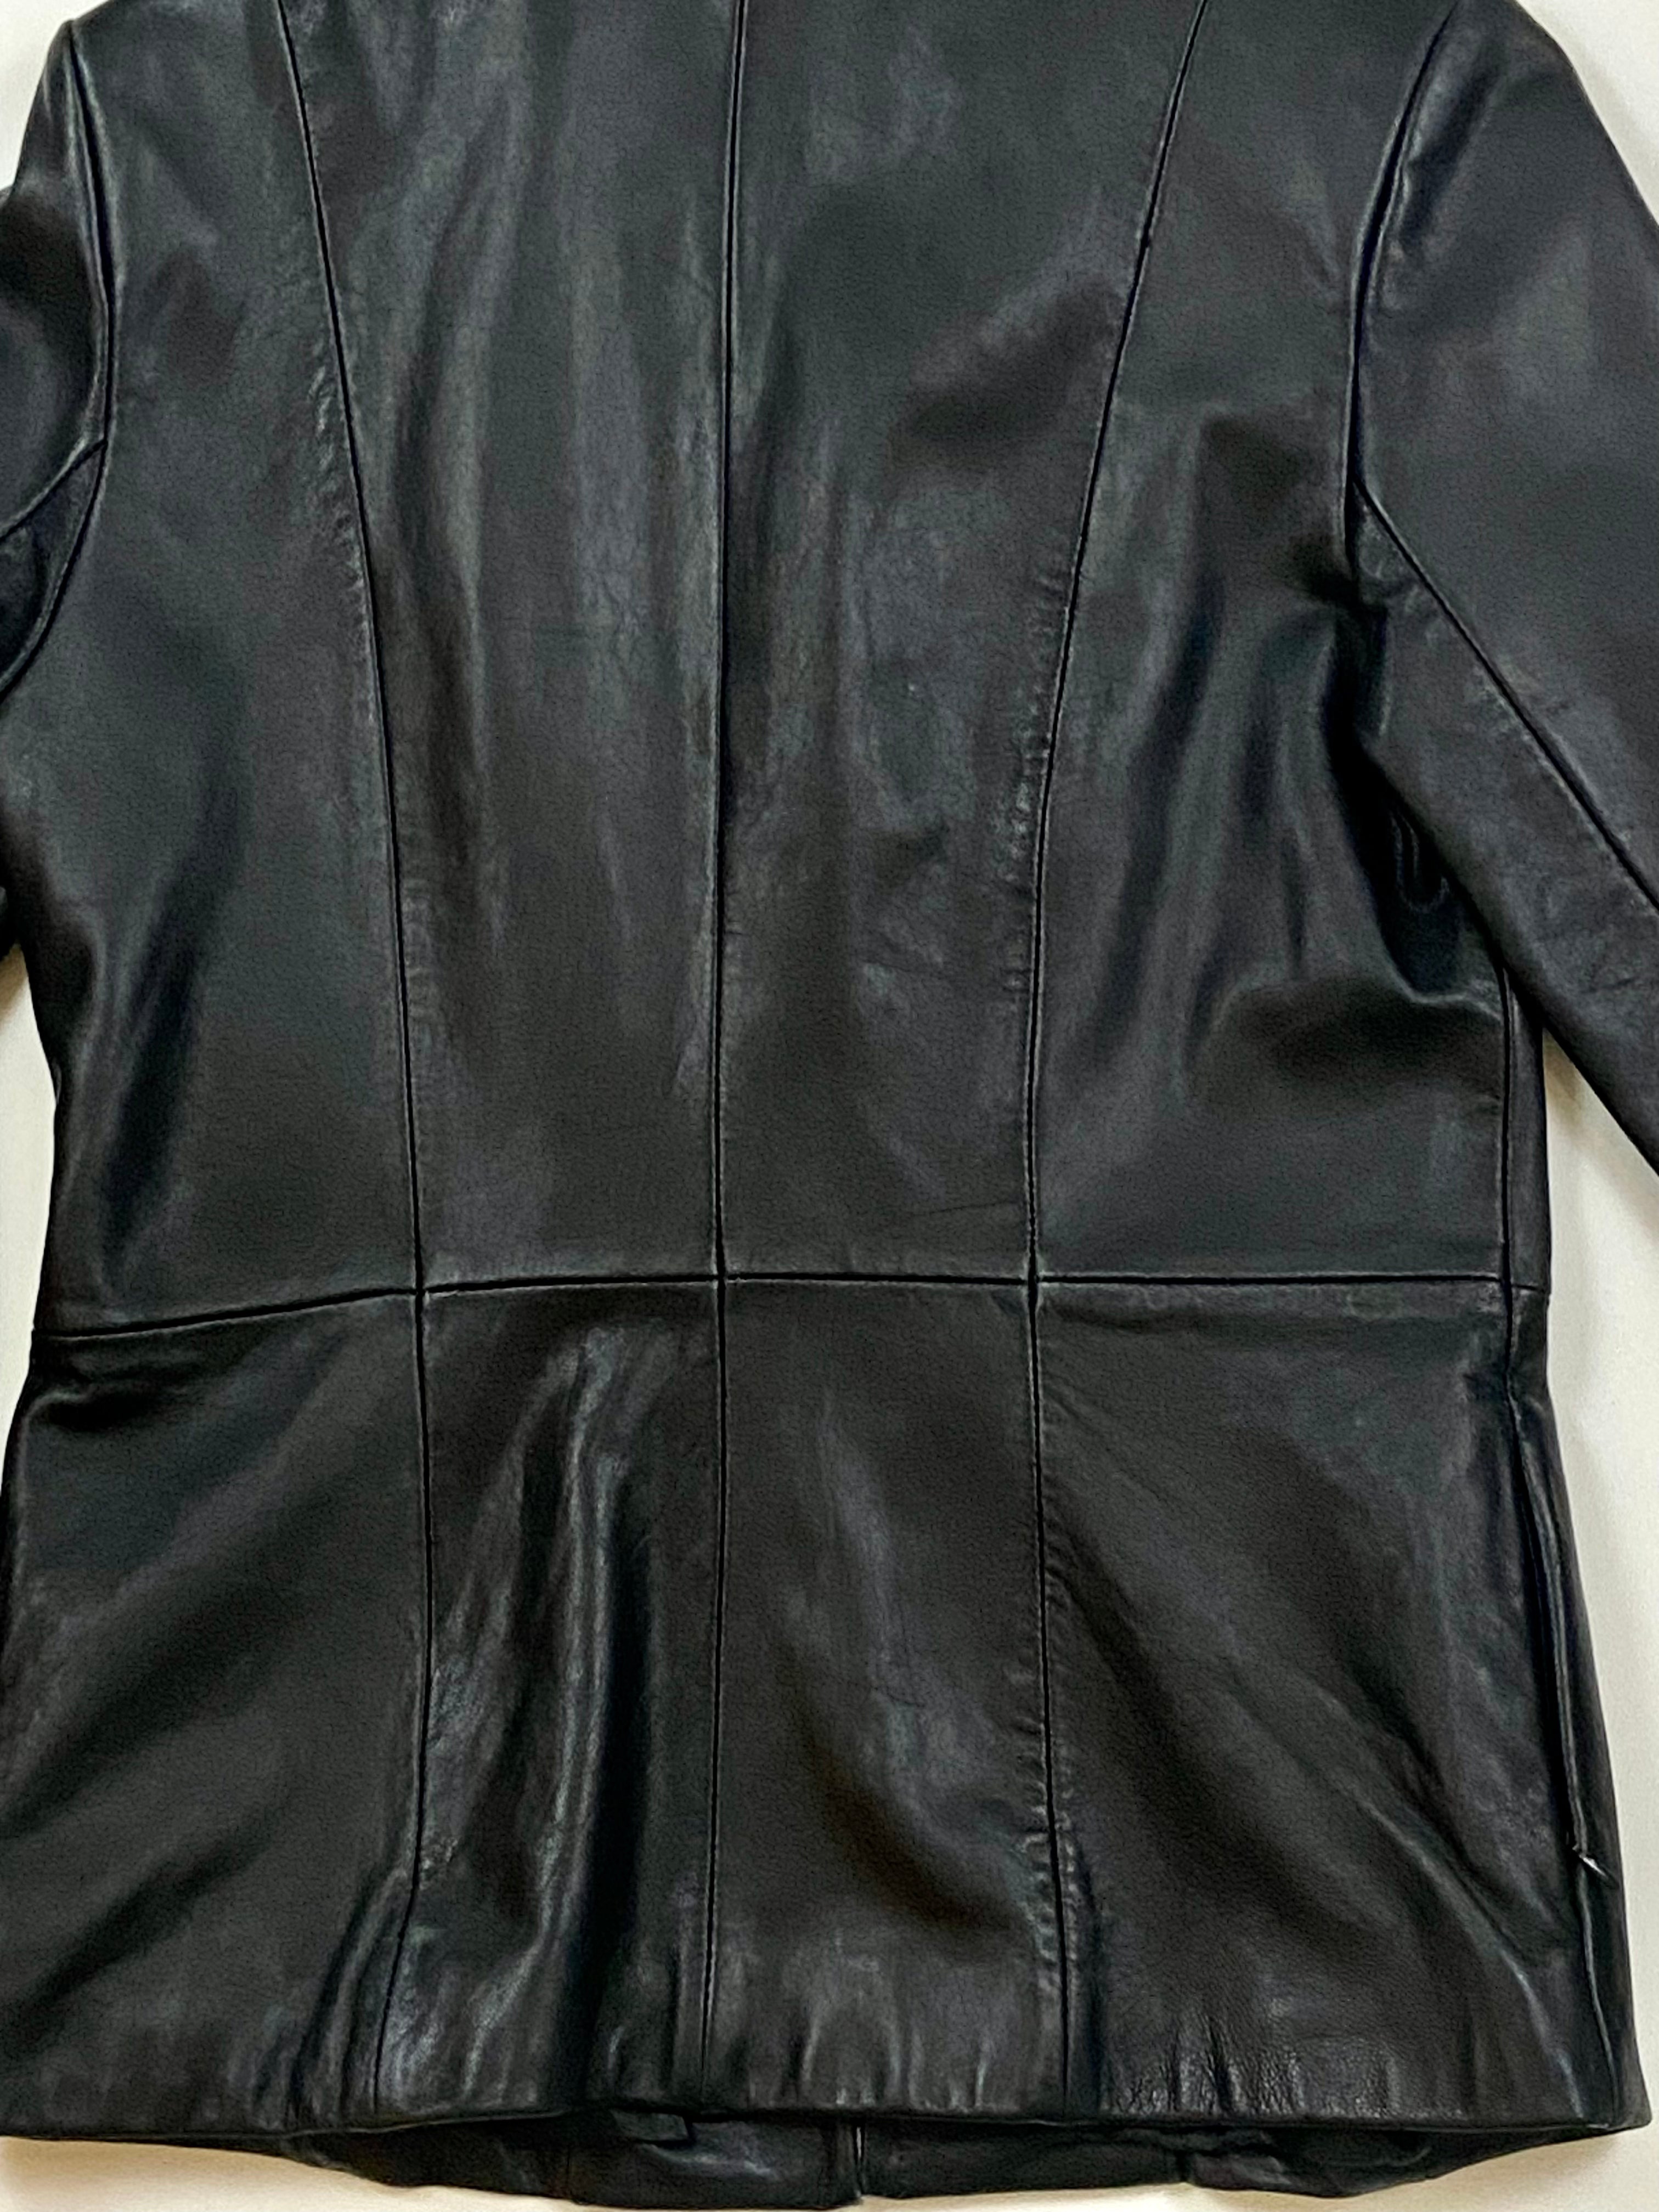 NY&CO black leather jacket